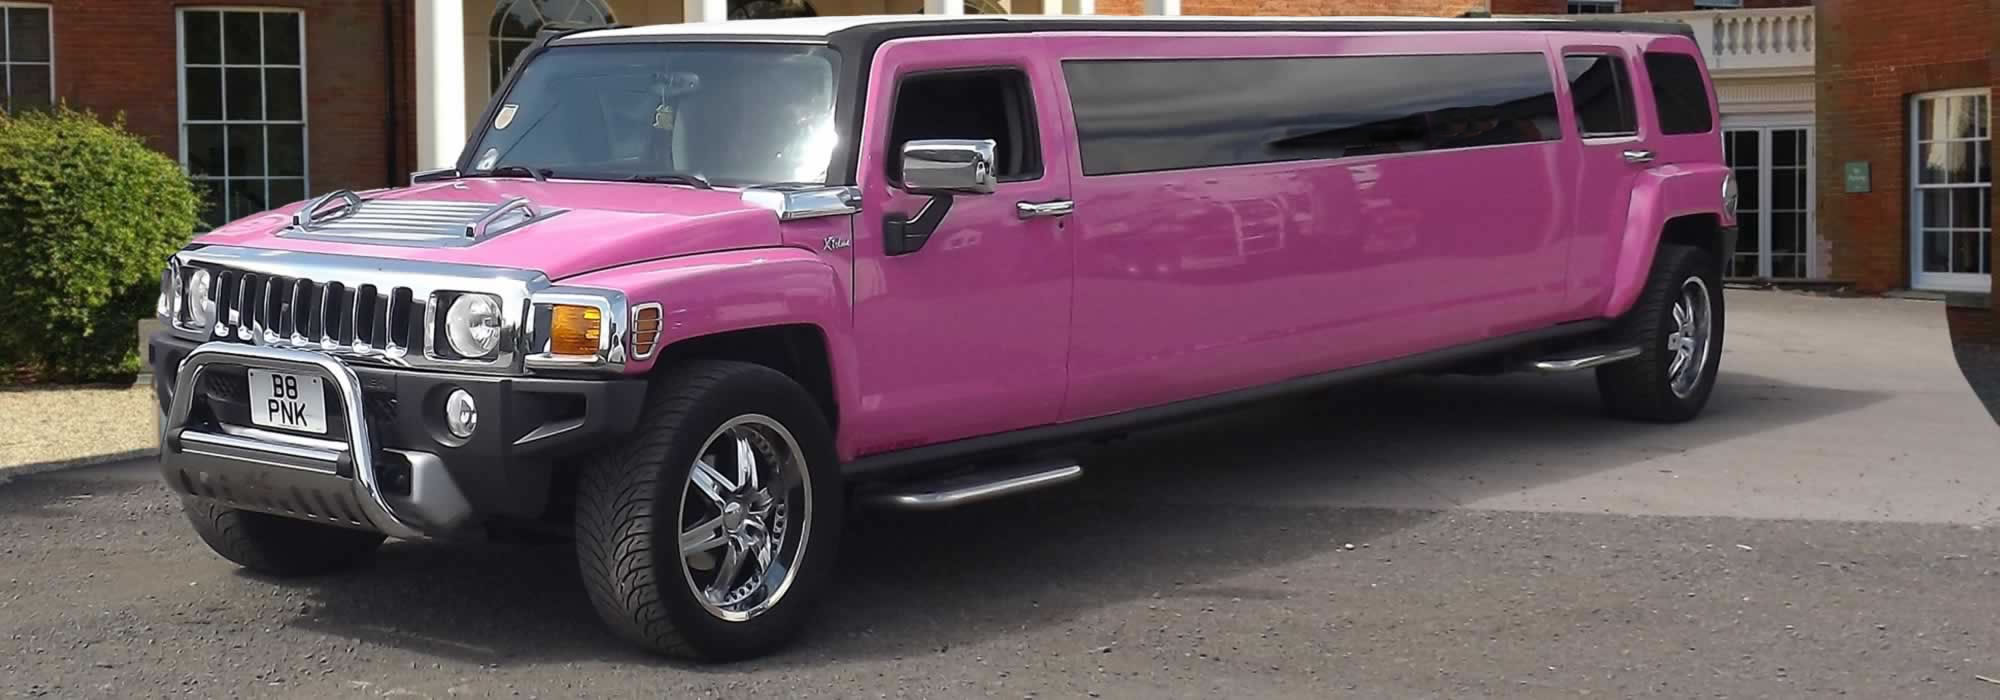 Pink Hummer H3 limo